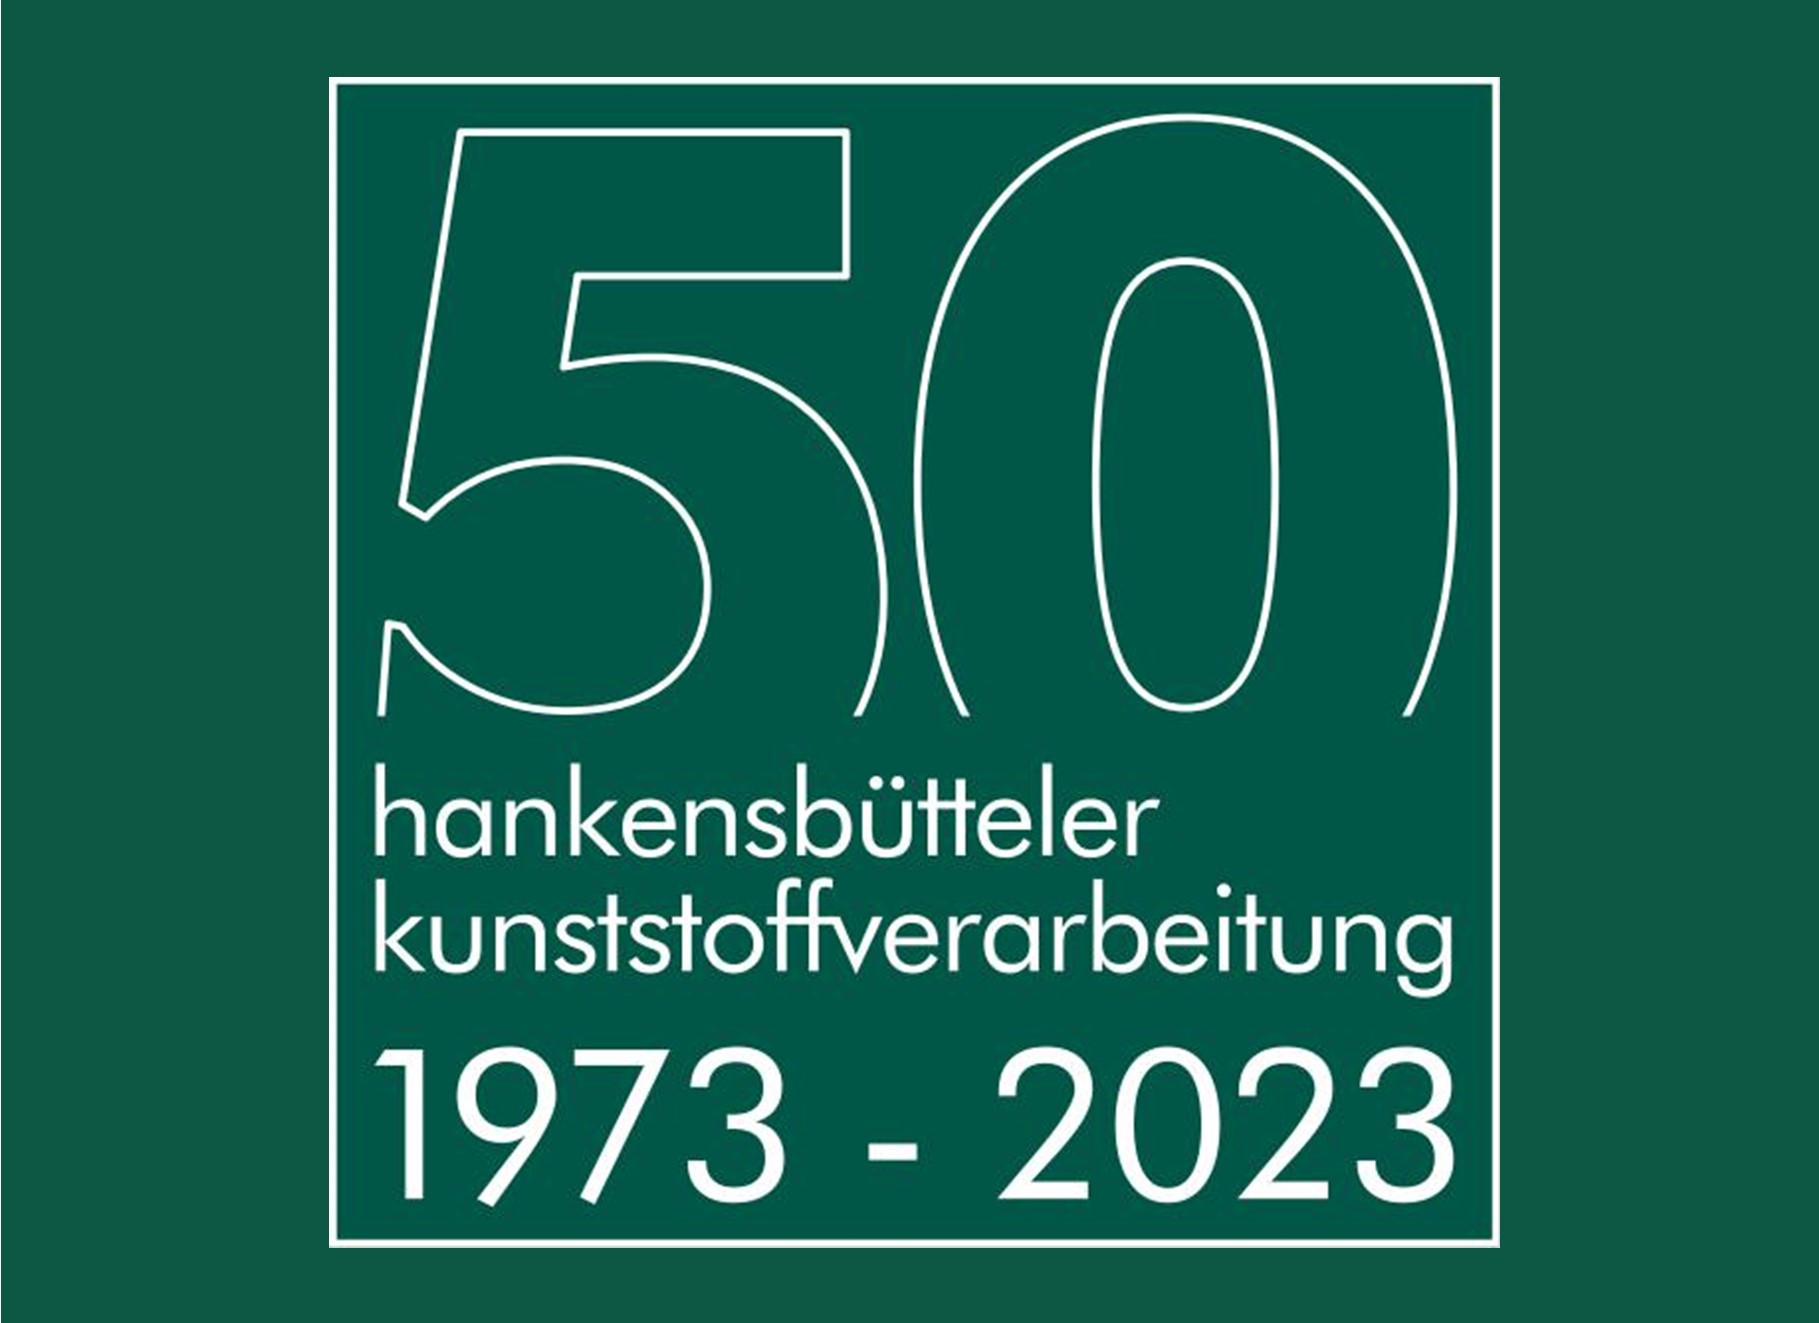 hankensbütteler kunststoffverarbeitung GmbH & Co. KG